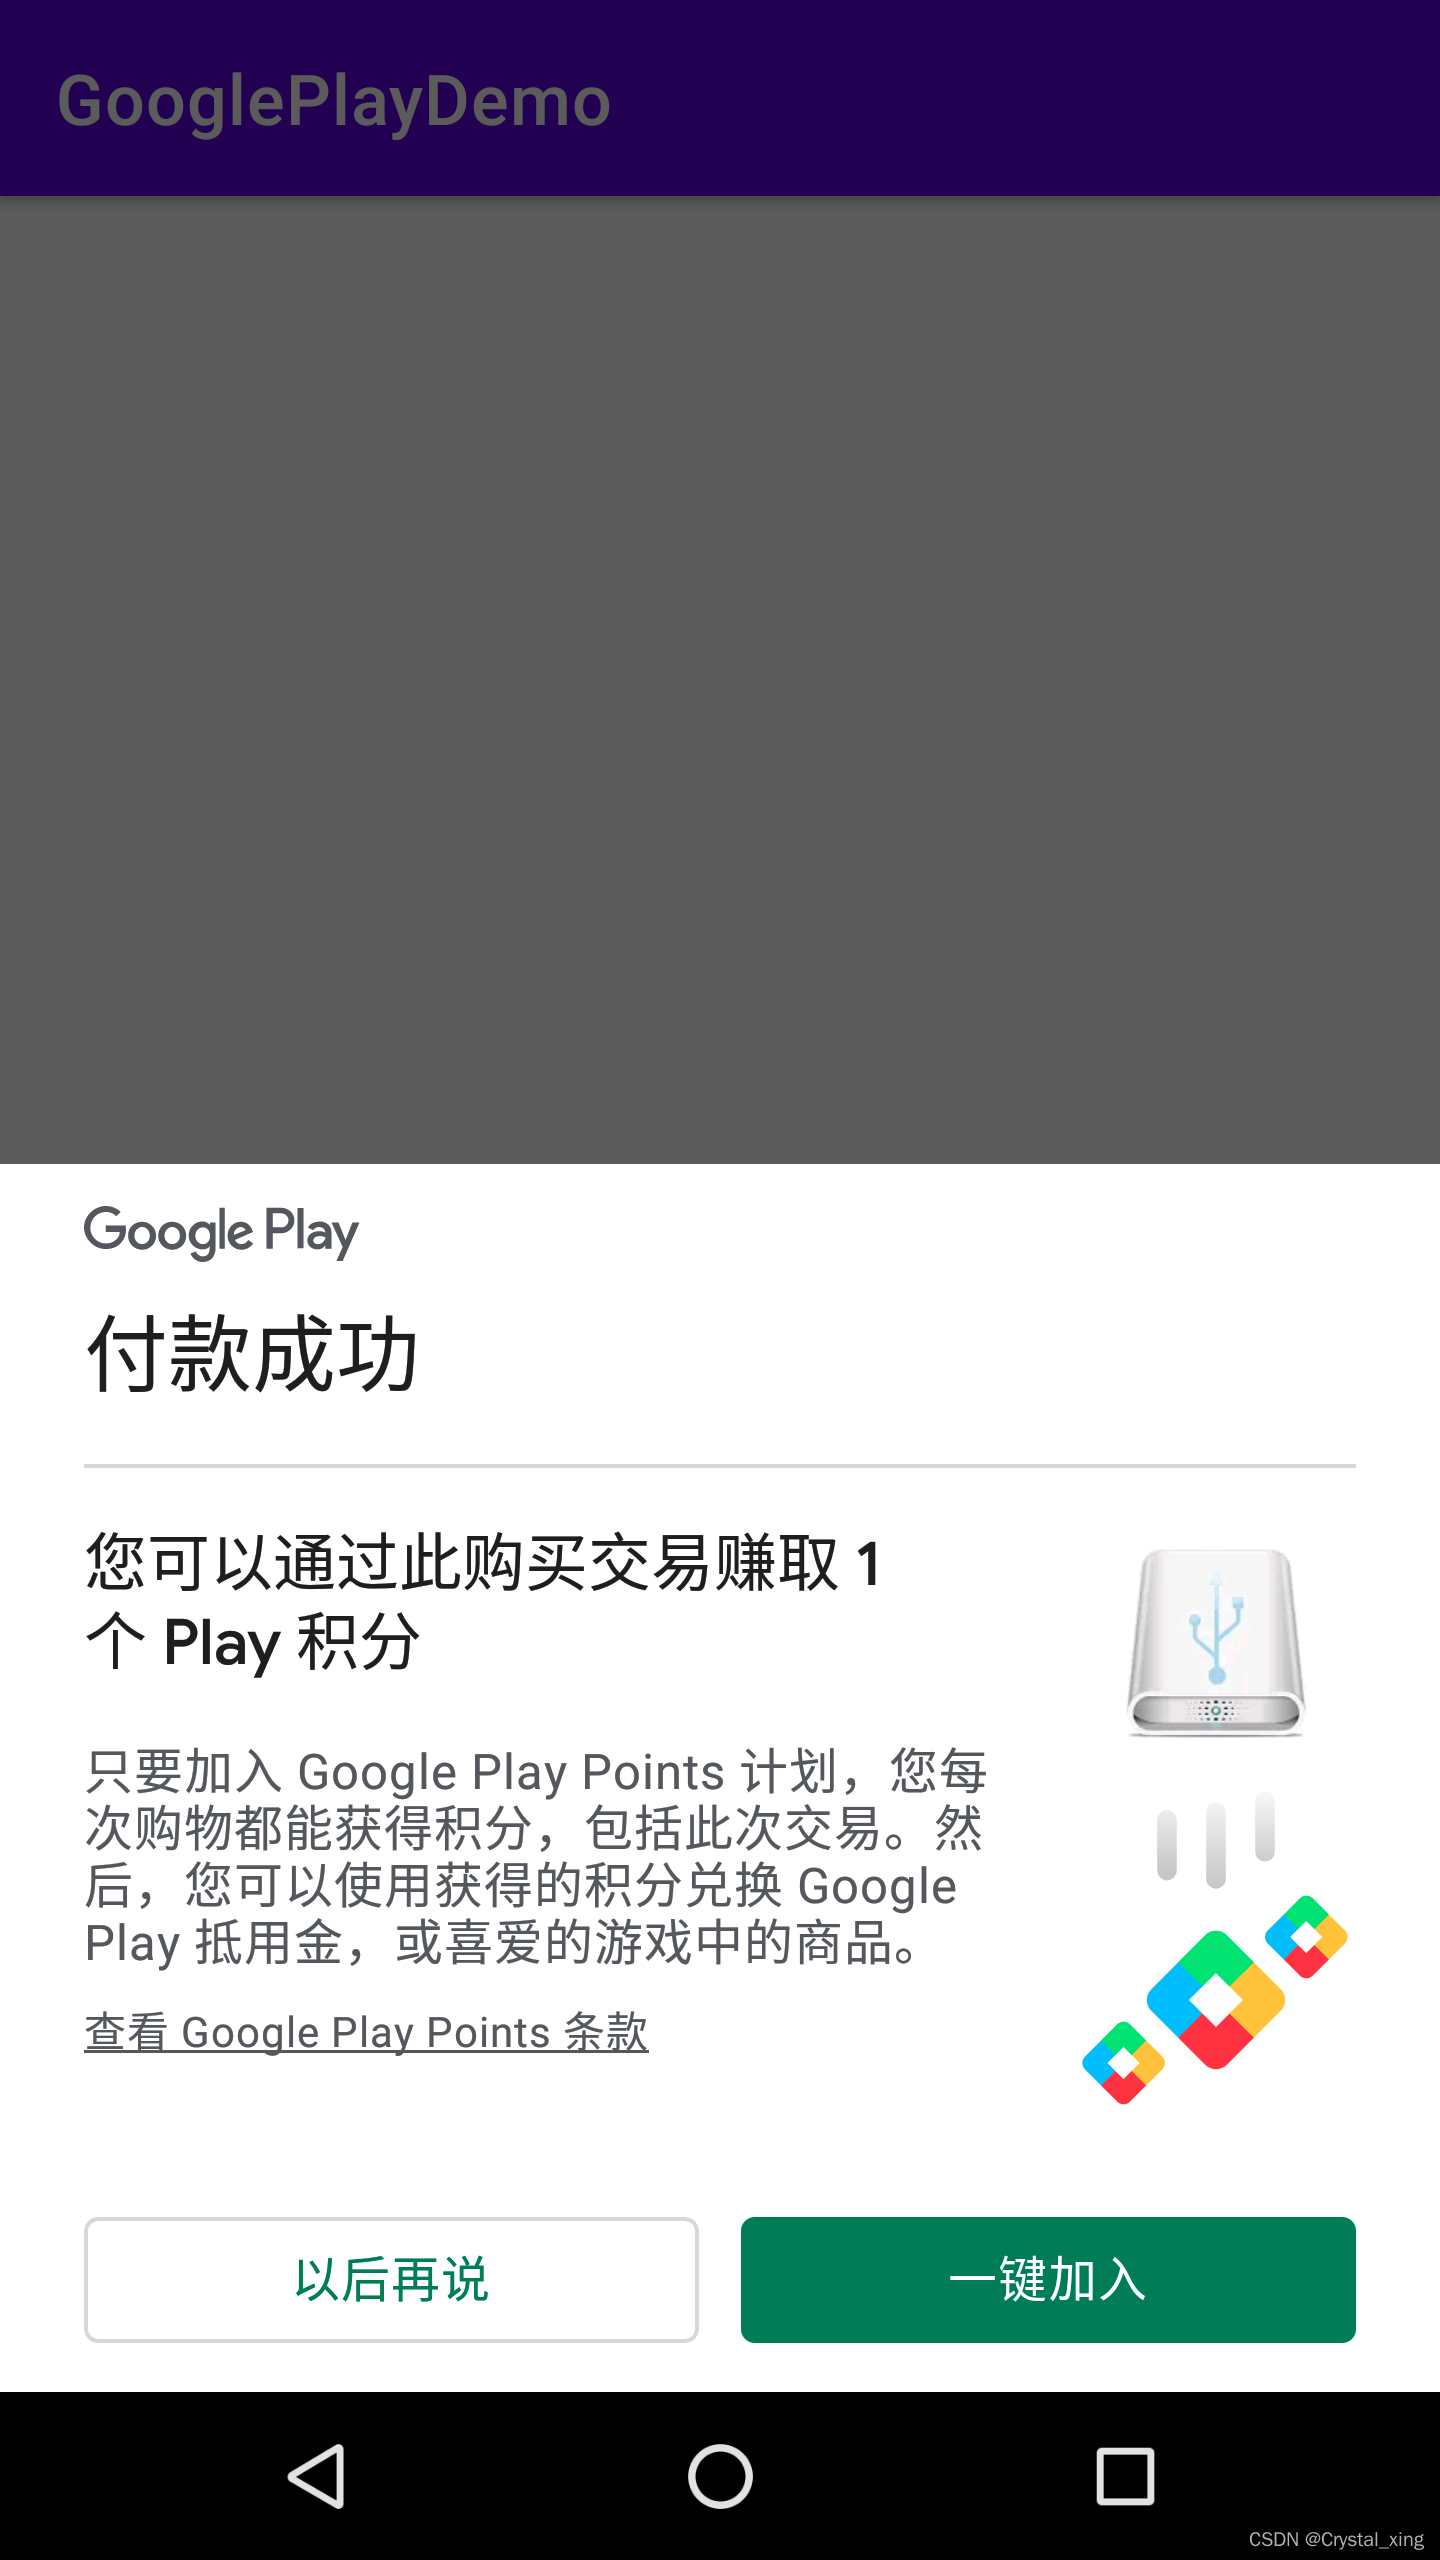 Android：关于GooglePlay支付的许可测试